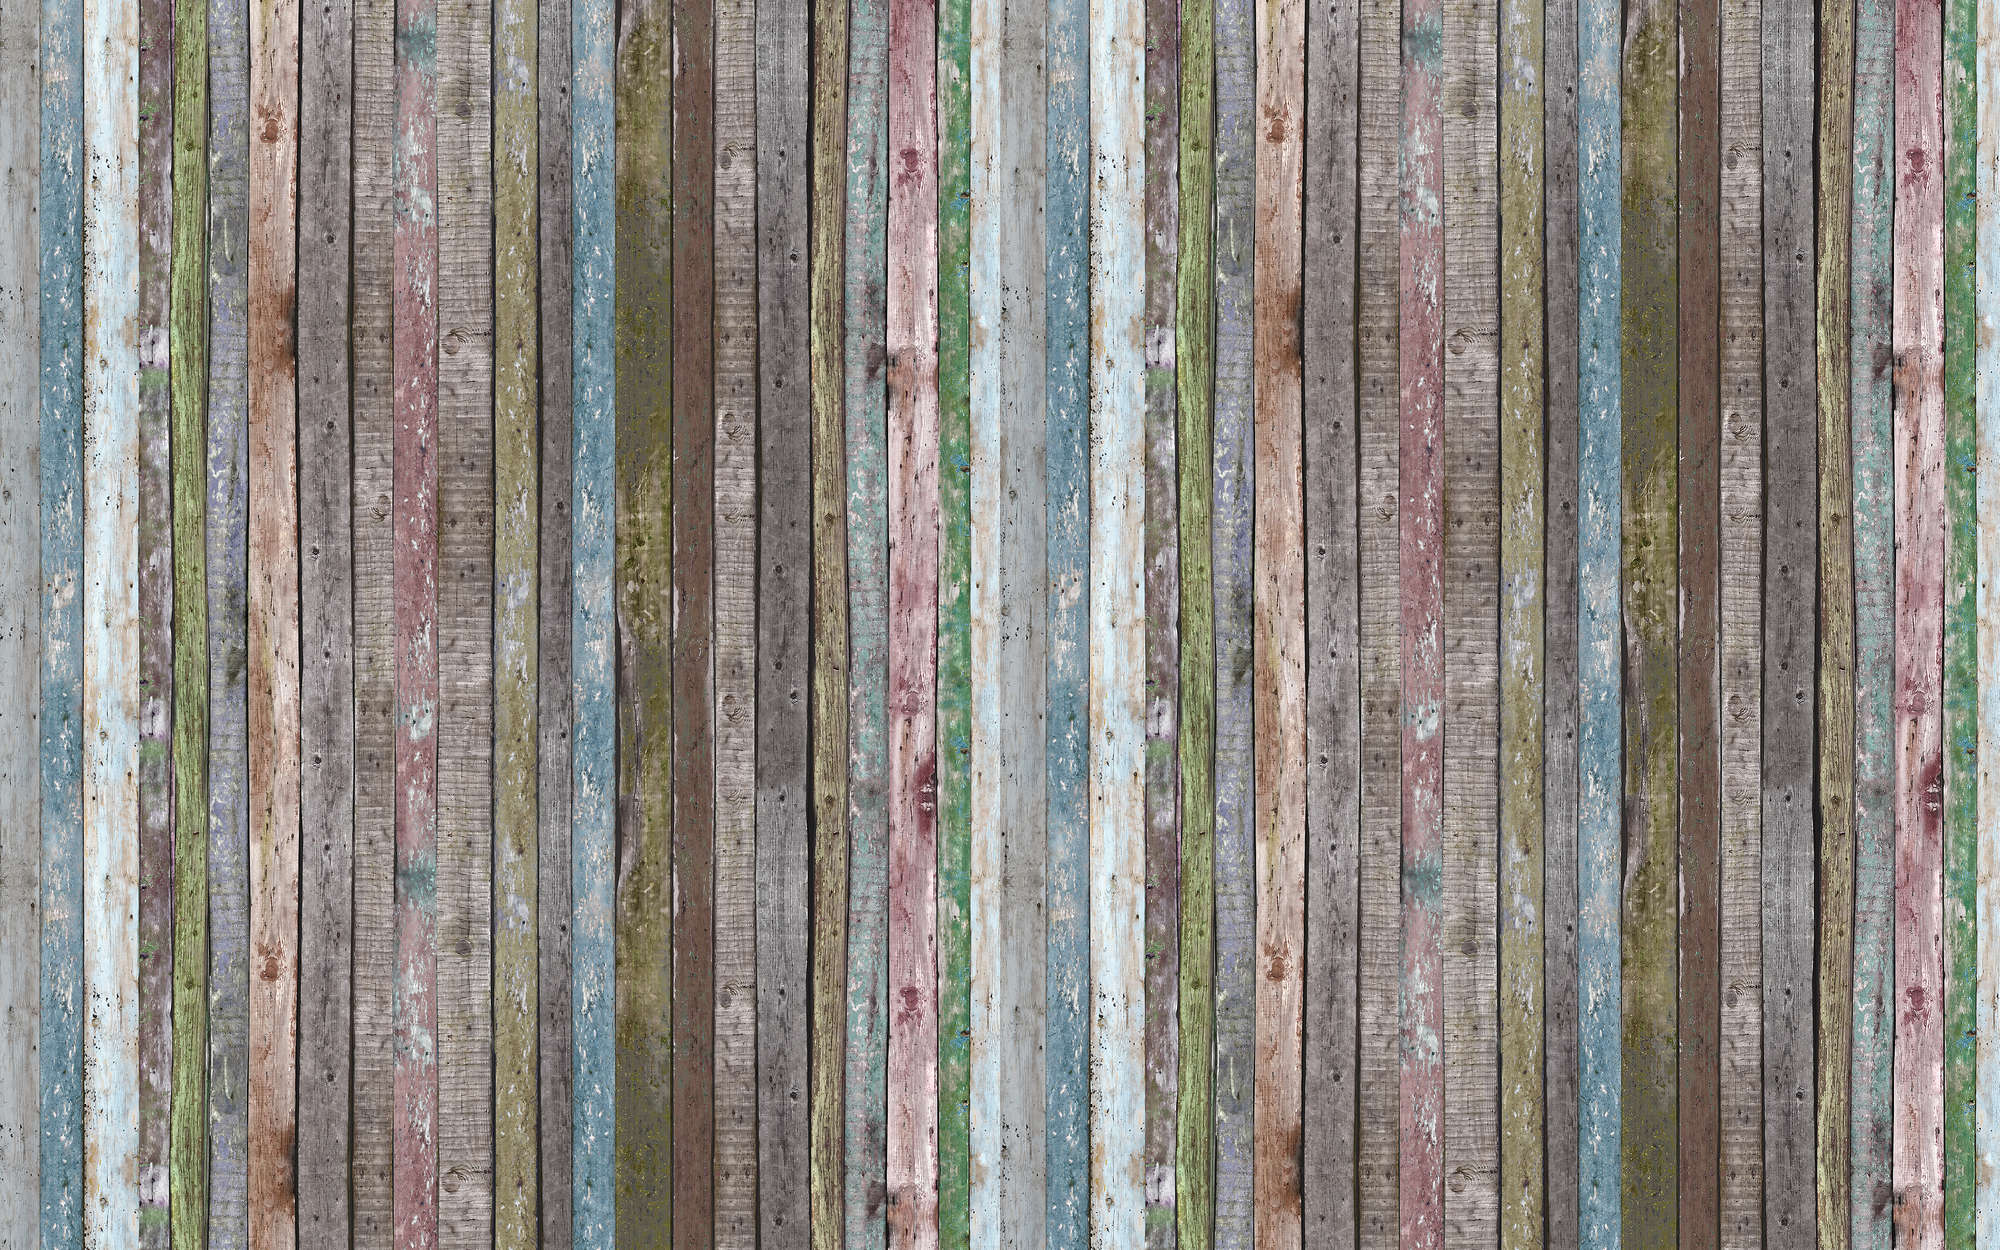             Fototapete Streifenbalken aus Holz – Strukturiertes Vlies
        